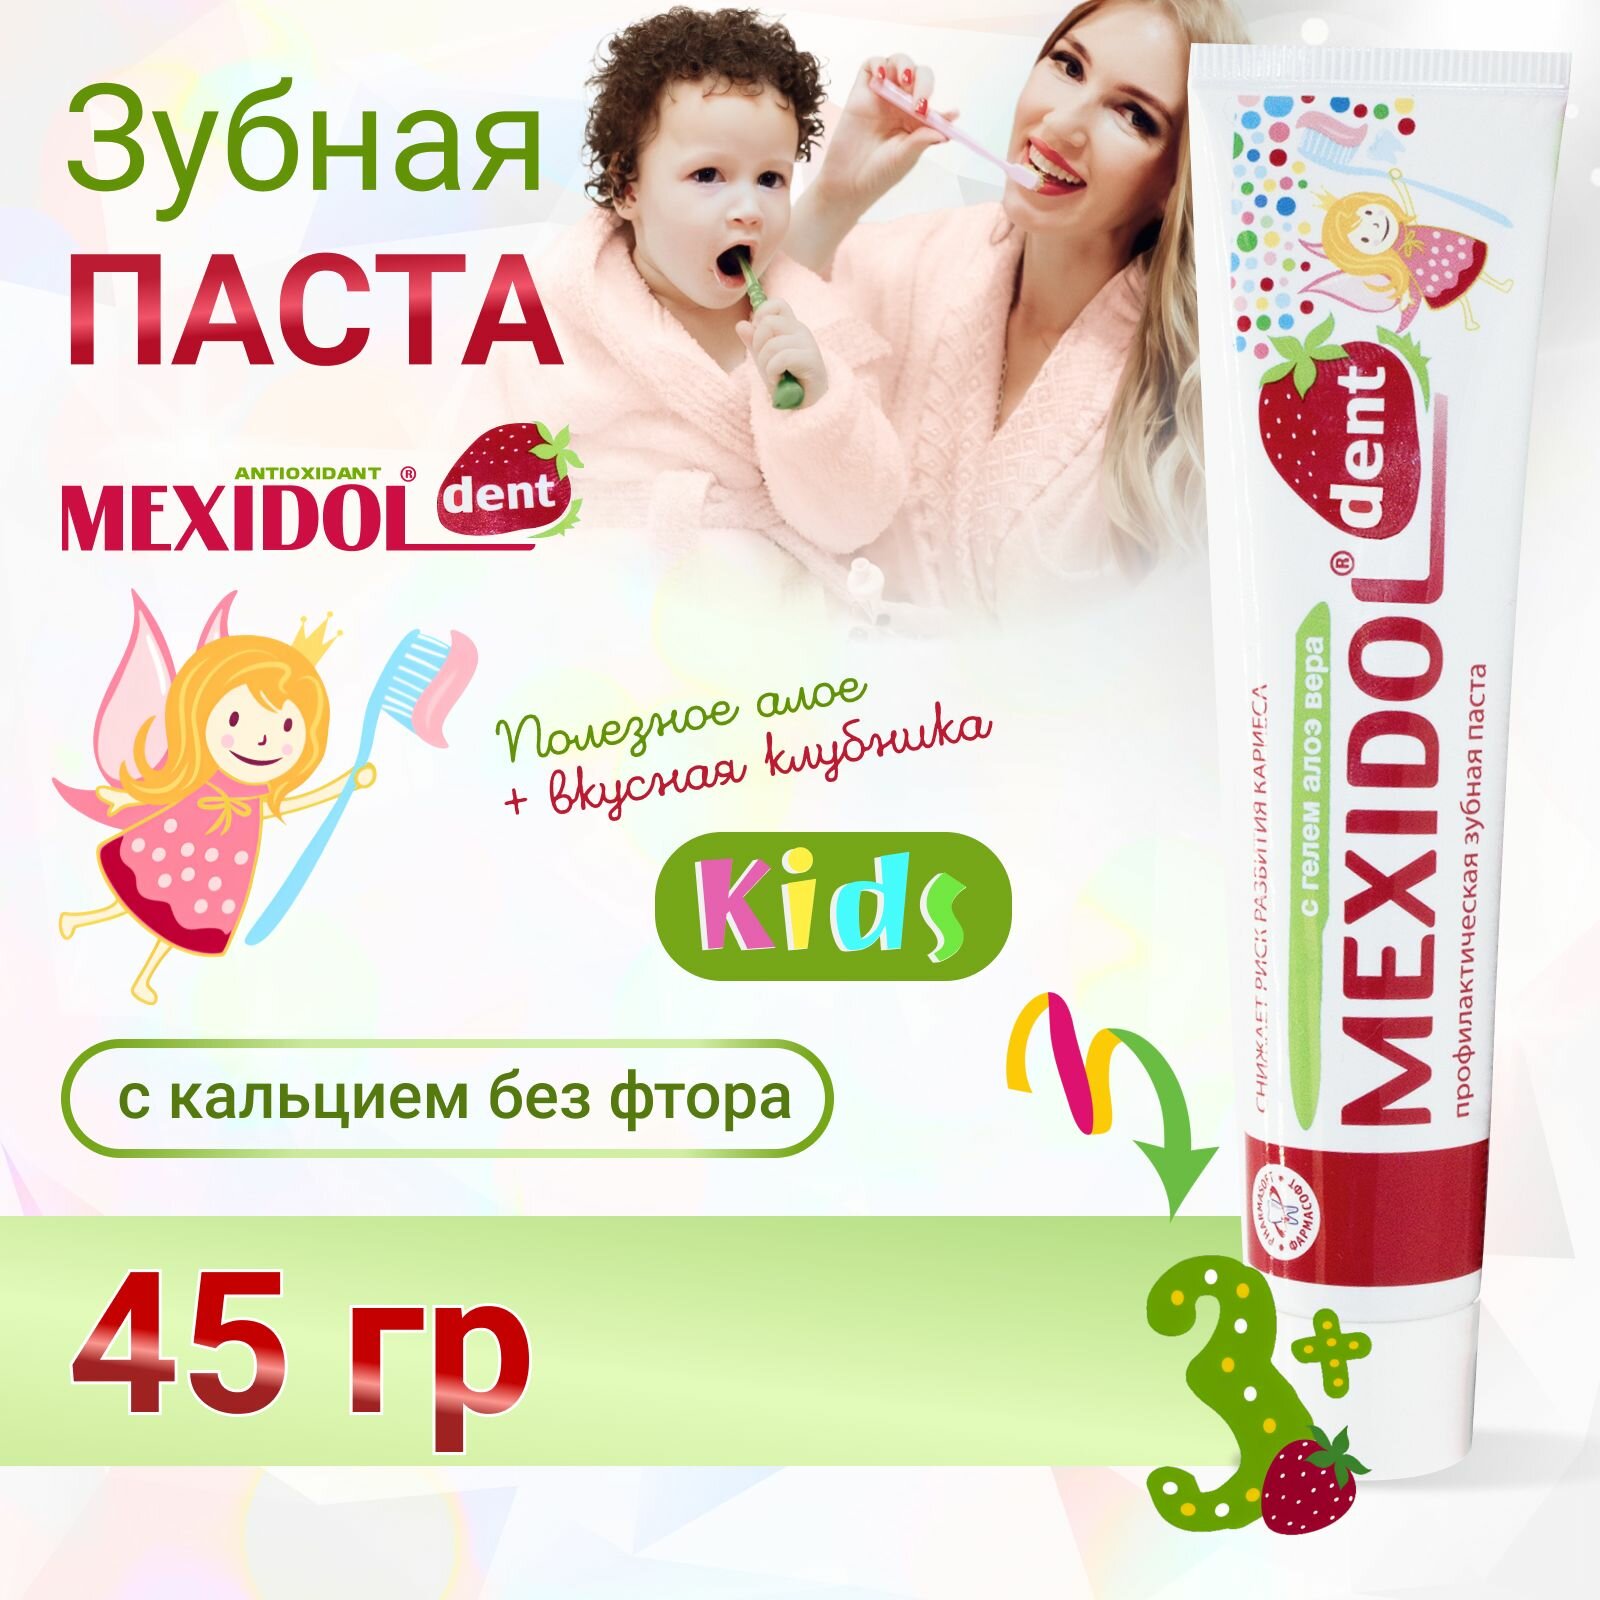 Детская зубная паста MEXIDOL Dent Kids 3+ 45г (Мексидол дент Кидс) для укрепления эмали с кальцием без фтора со вкусом клубники